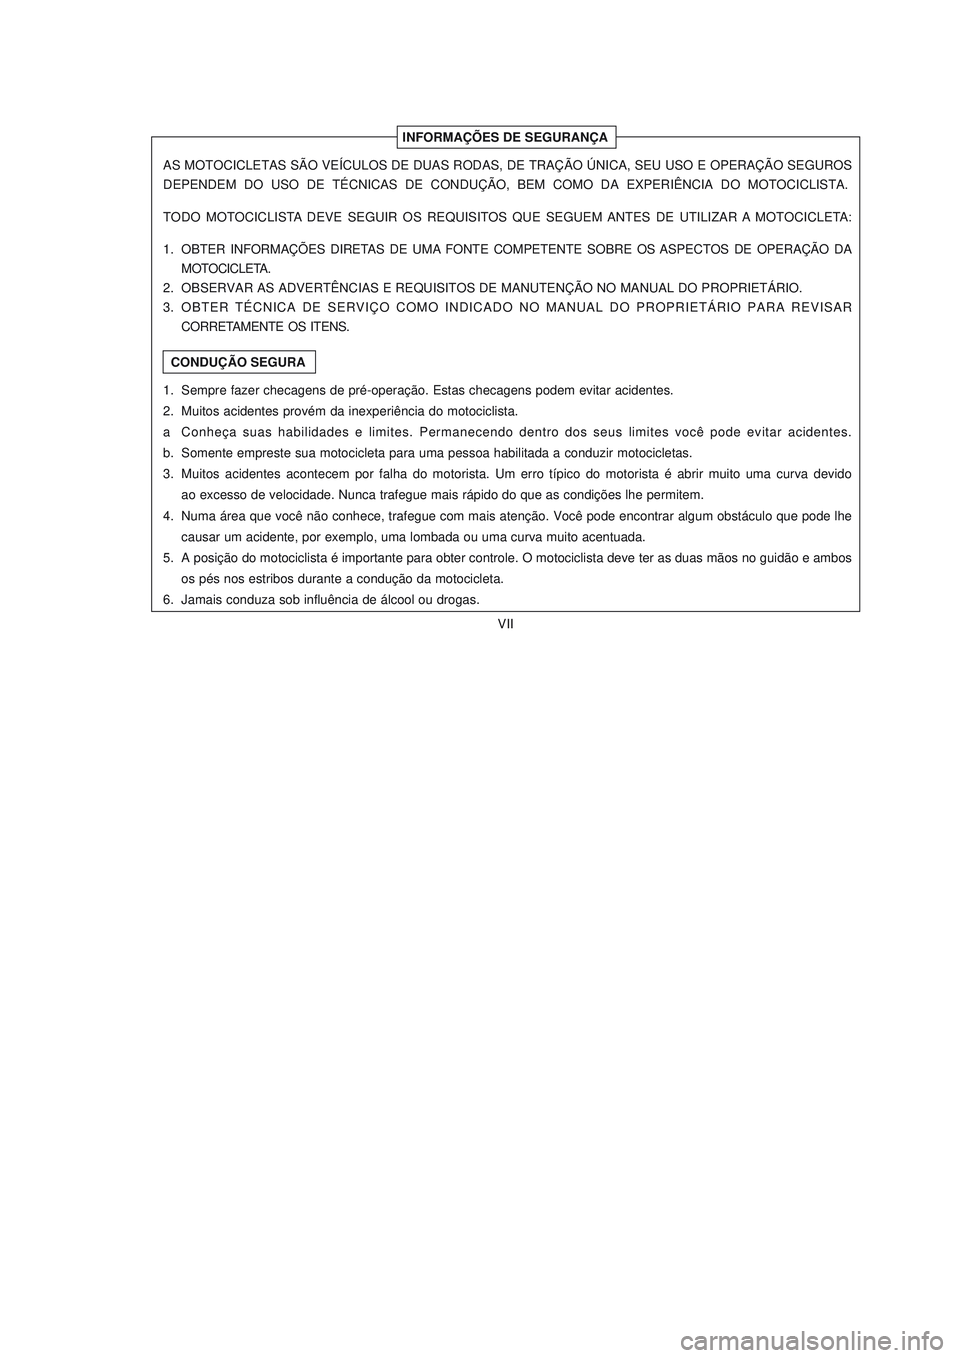 YAMAHA NEO115 2007  Manual de utilização (in Portuguese) VII
VII
INFORMAÇÕES DE SEGURANÇA
CONDUÇÃO SEGURA AS MOTOCICLETAS SÃO VEÍCULOS DE DUAS RODAS, DE TRAÇÃO ÚNICA, SEU USO E OPERAÇÃO SEGUROS
DEPENDEM  DO  USO  DE  TÉCNICAS  DE  CONDUÇÃO,  